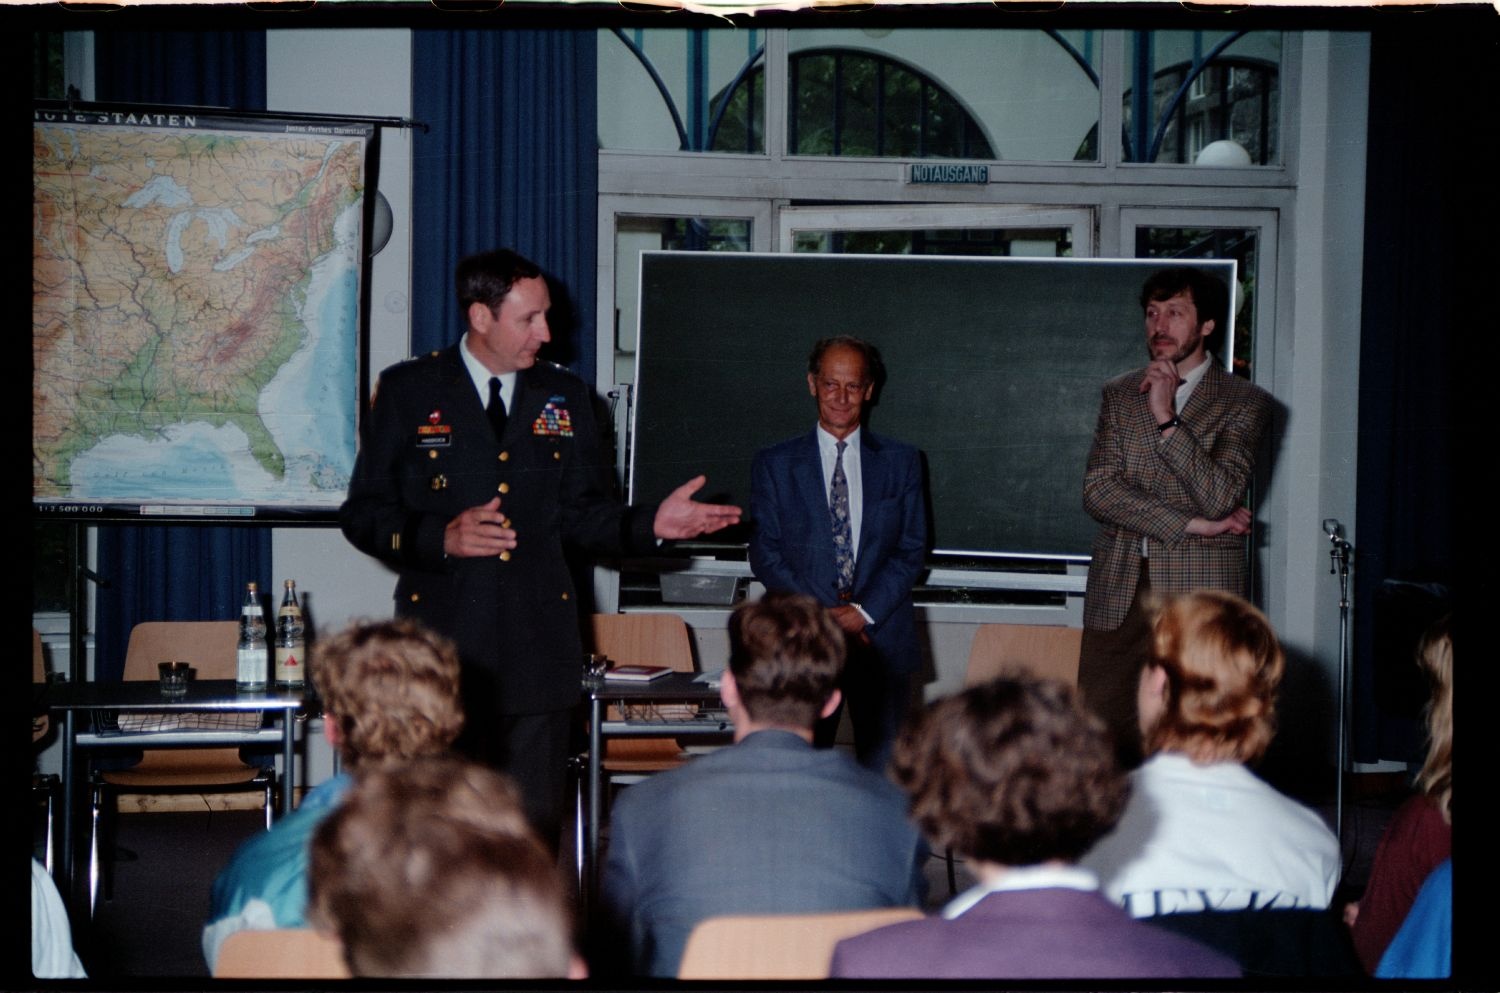 Fotografie: Besuch von US-Stadtkommandant Major General Raymond E. Haddock in einem Gymnasium in West-Berlin (AlliiertenMuseum/U.S. Army Photograph Public Domain Mark)